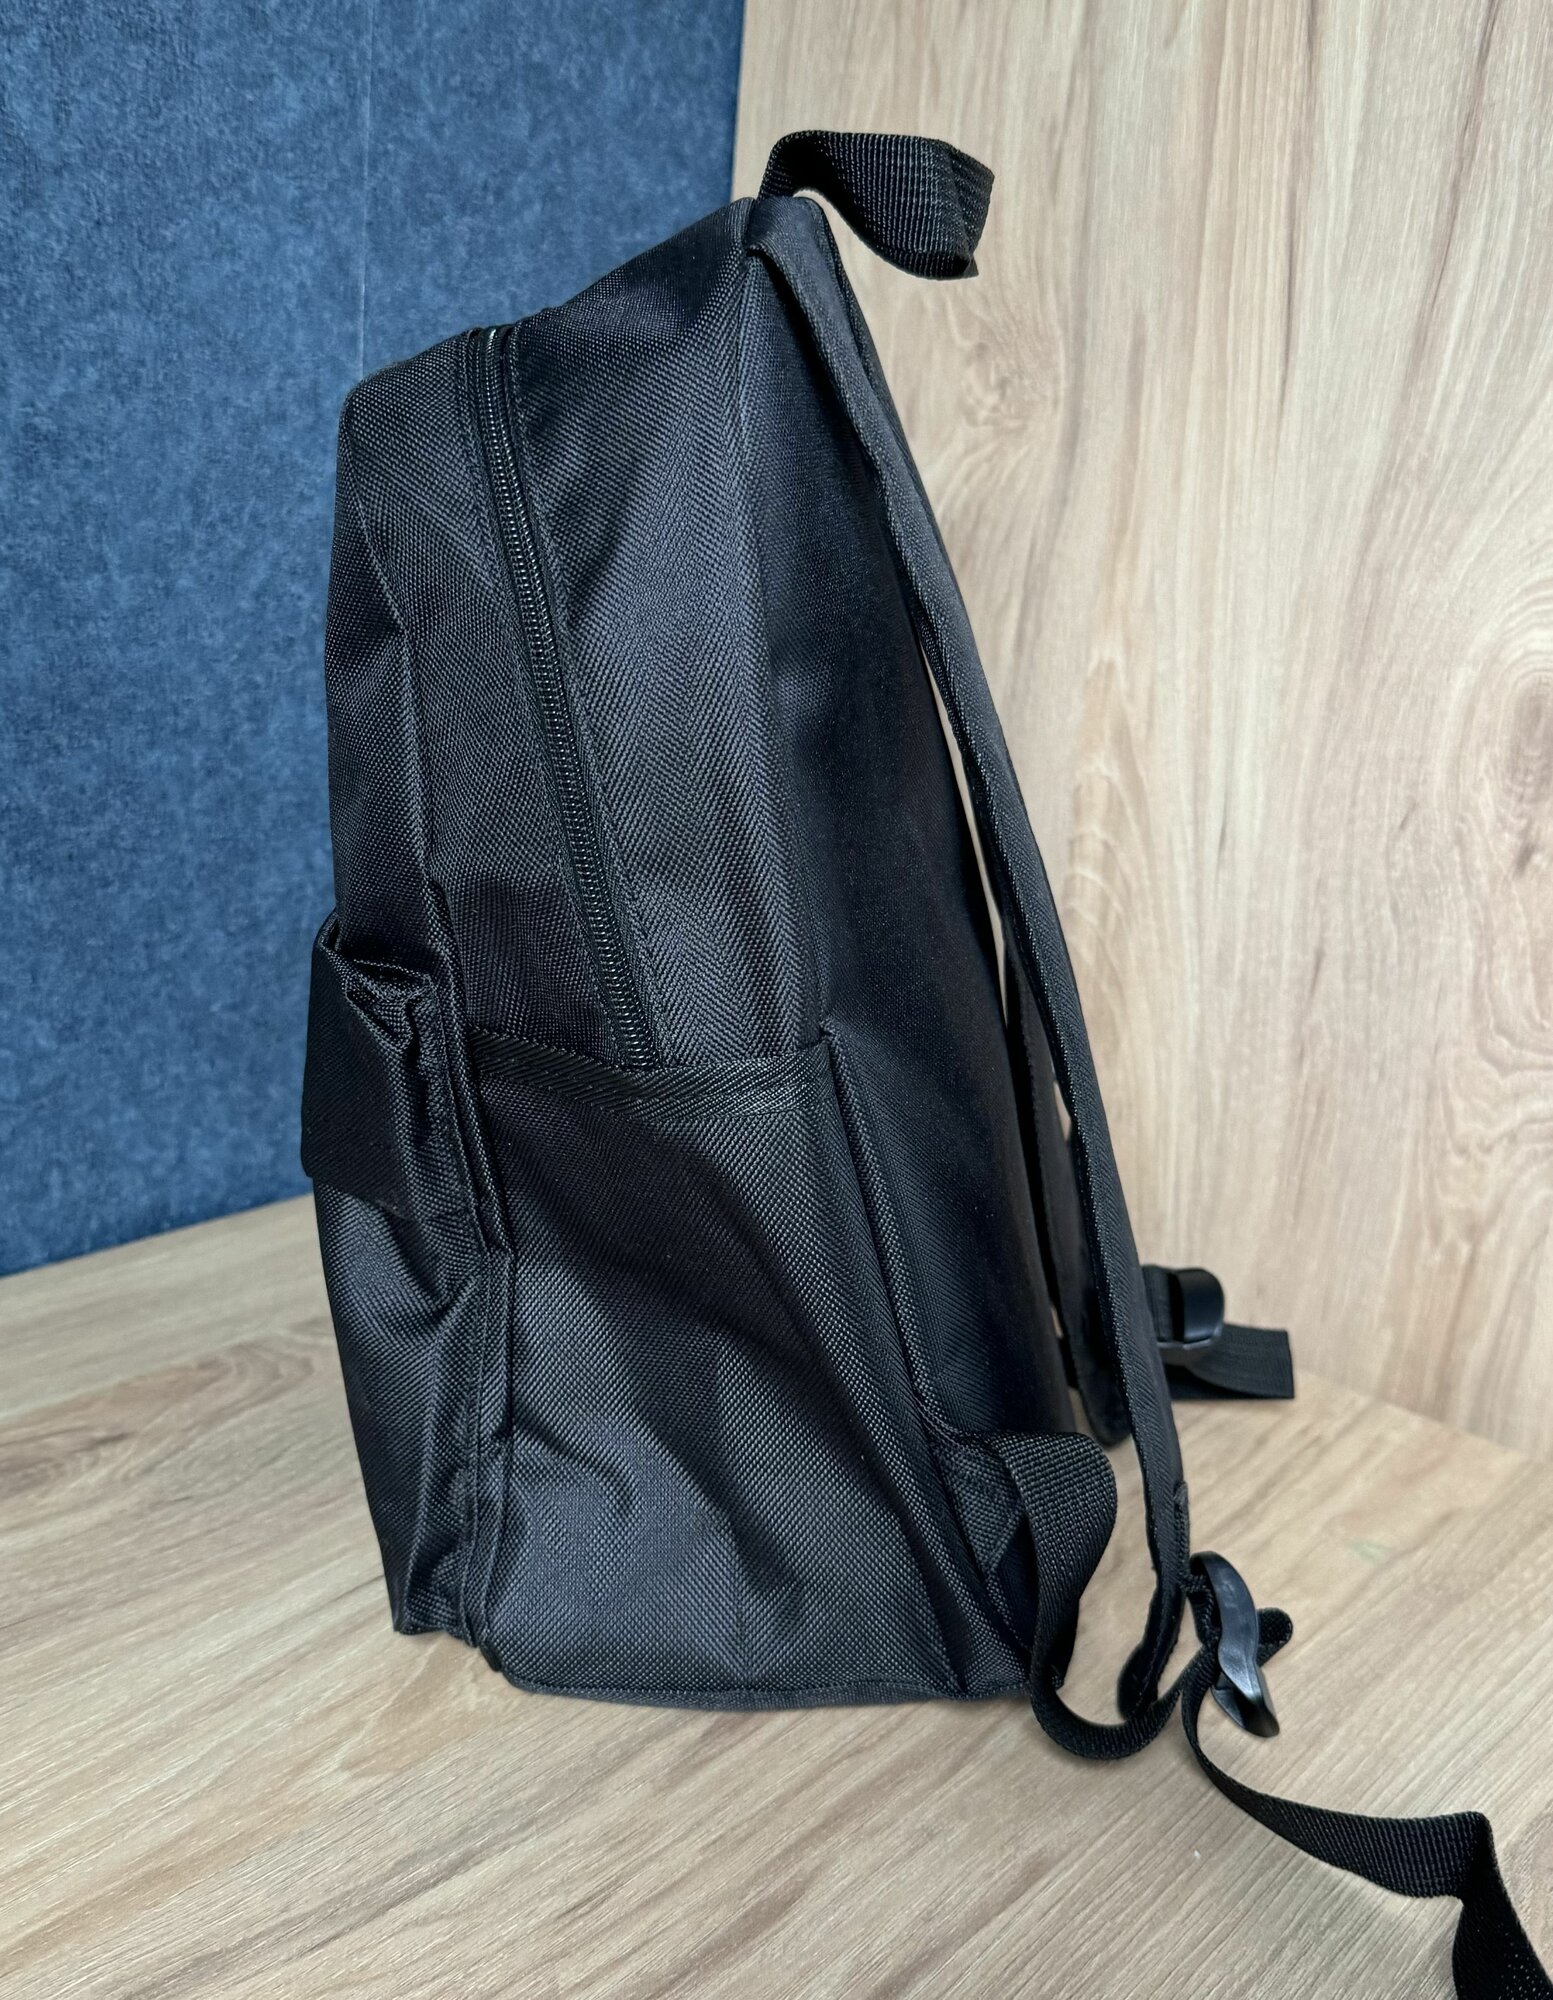 Детский рюкзак найк для мальчика и девочки спортивный черный для кружка гимнастики